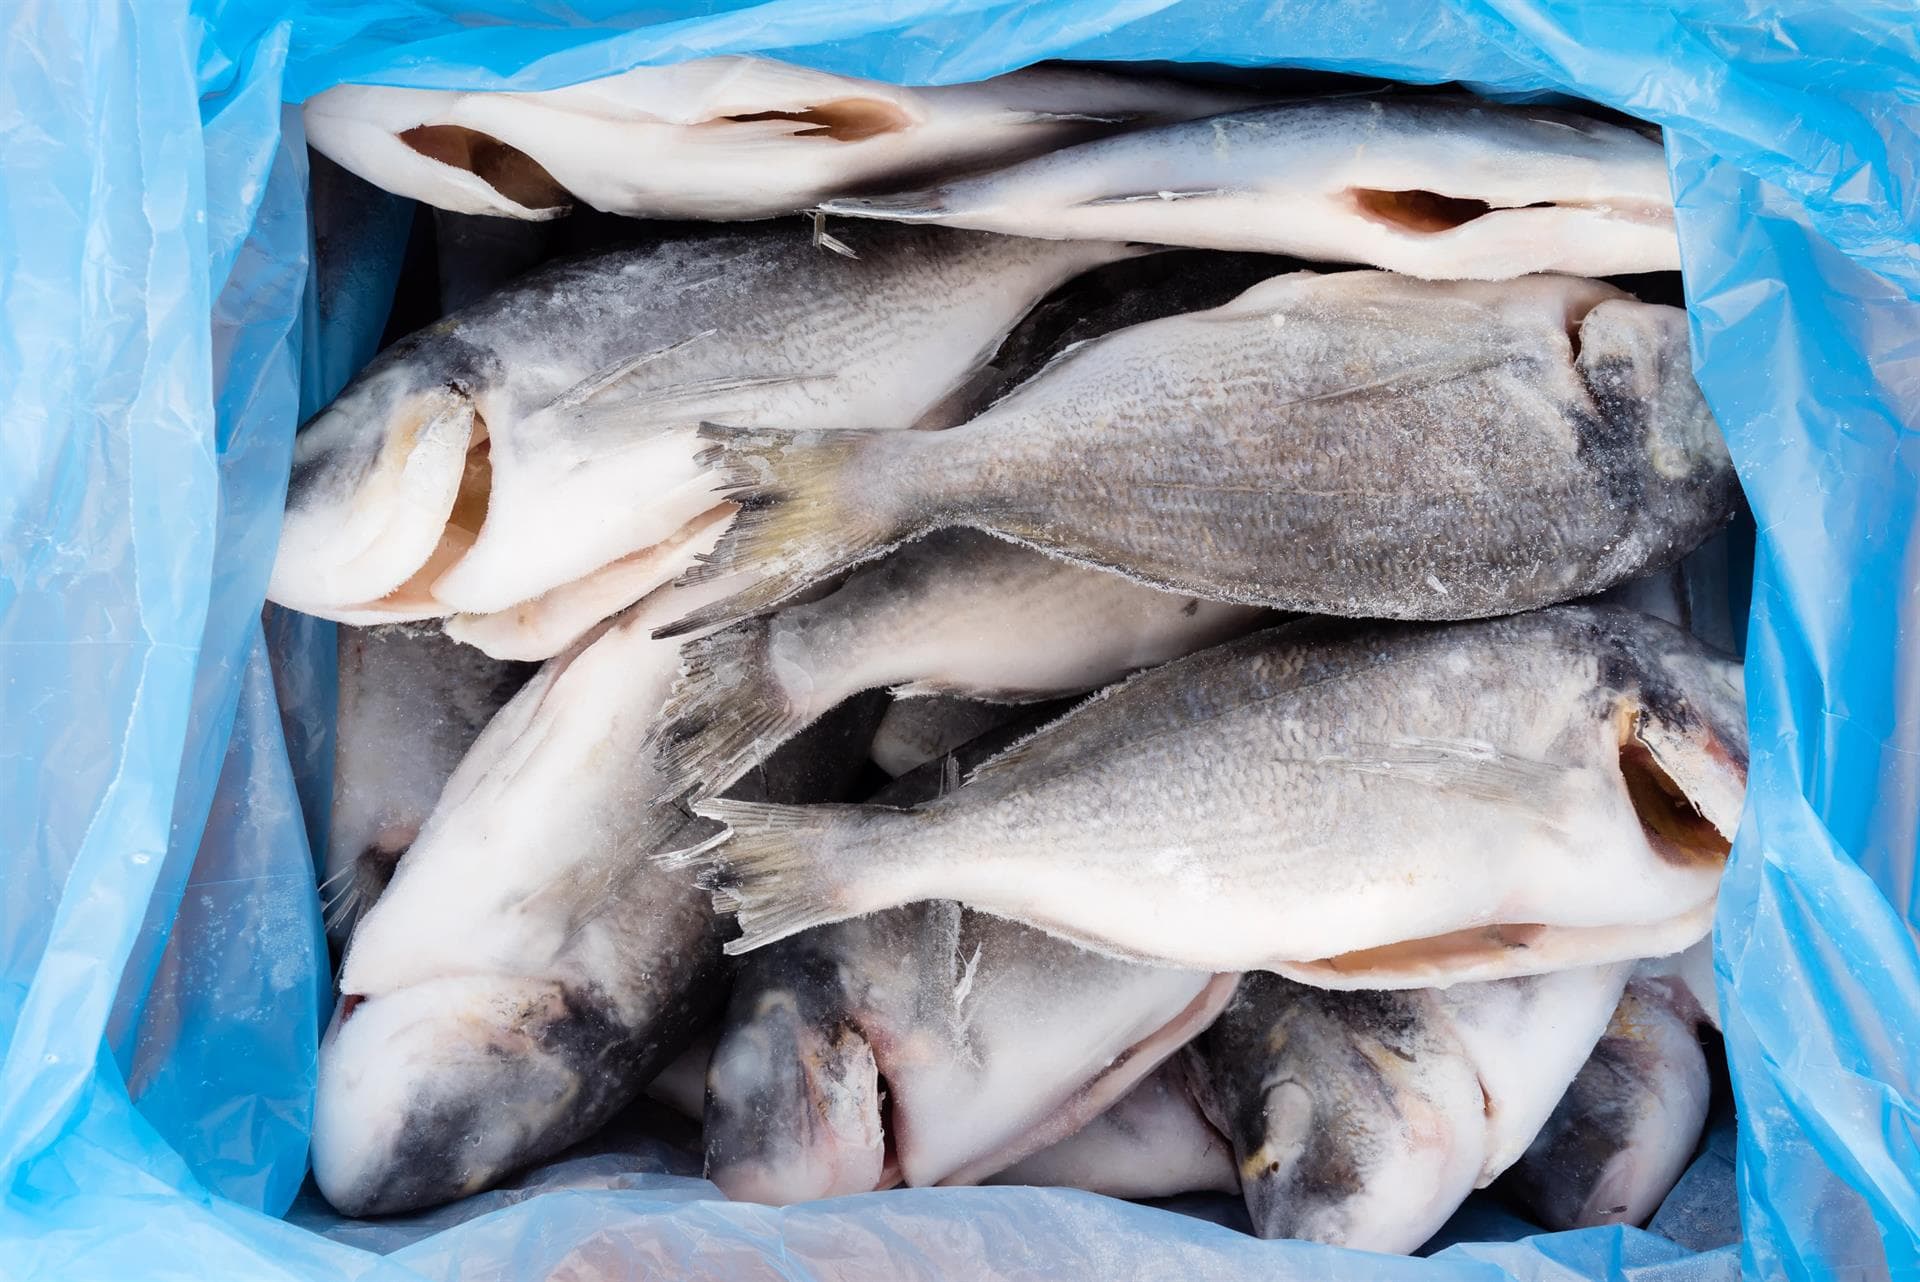 Venta de pescado congelado en Lugo - Congelados Sarrianos